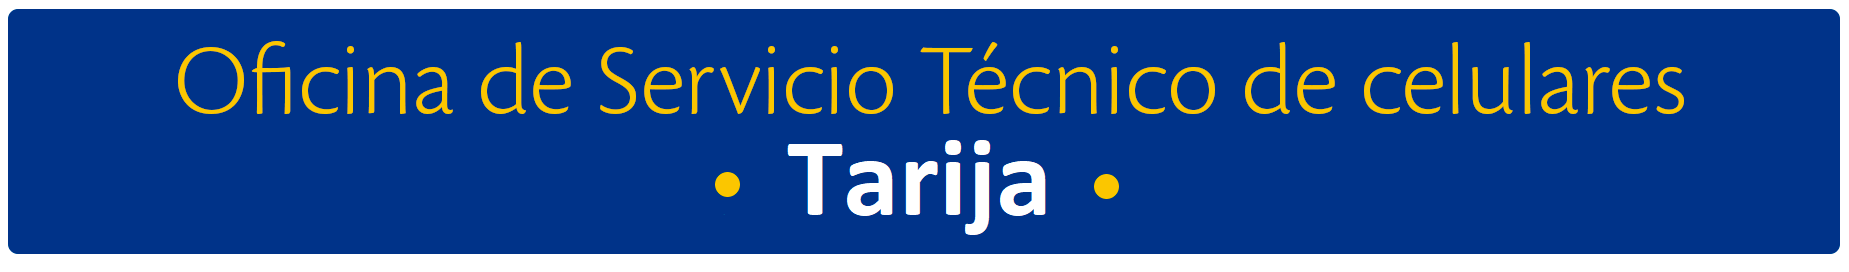 aw-titulo_Tarija_servicio_tecnico.png